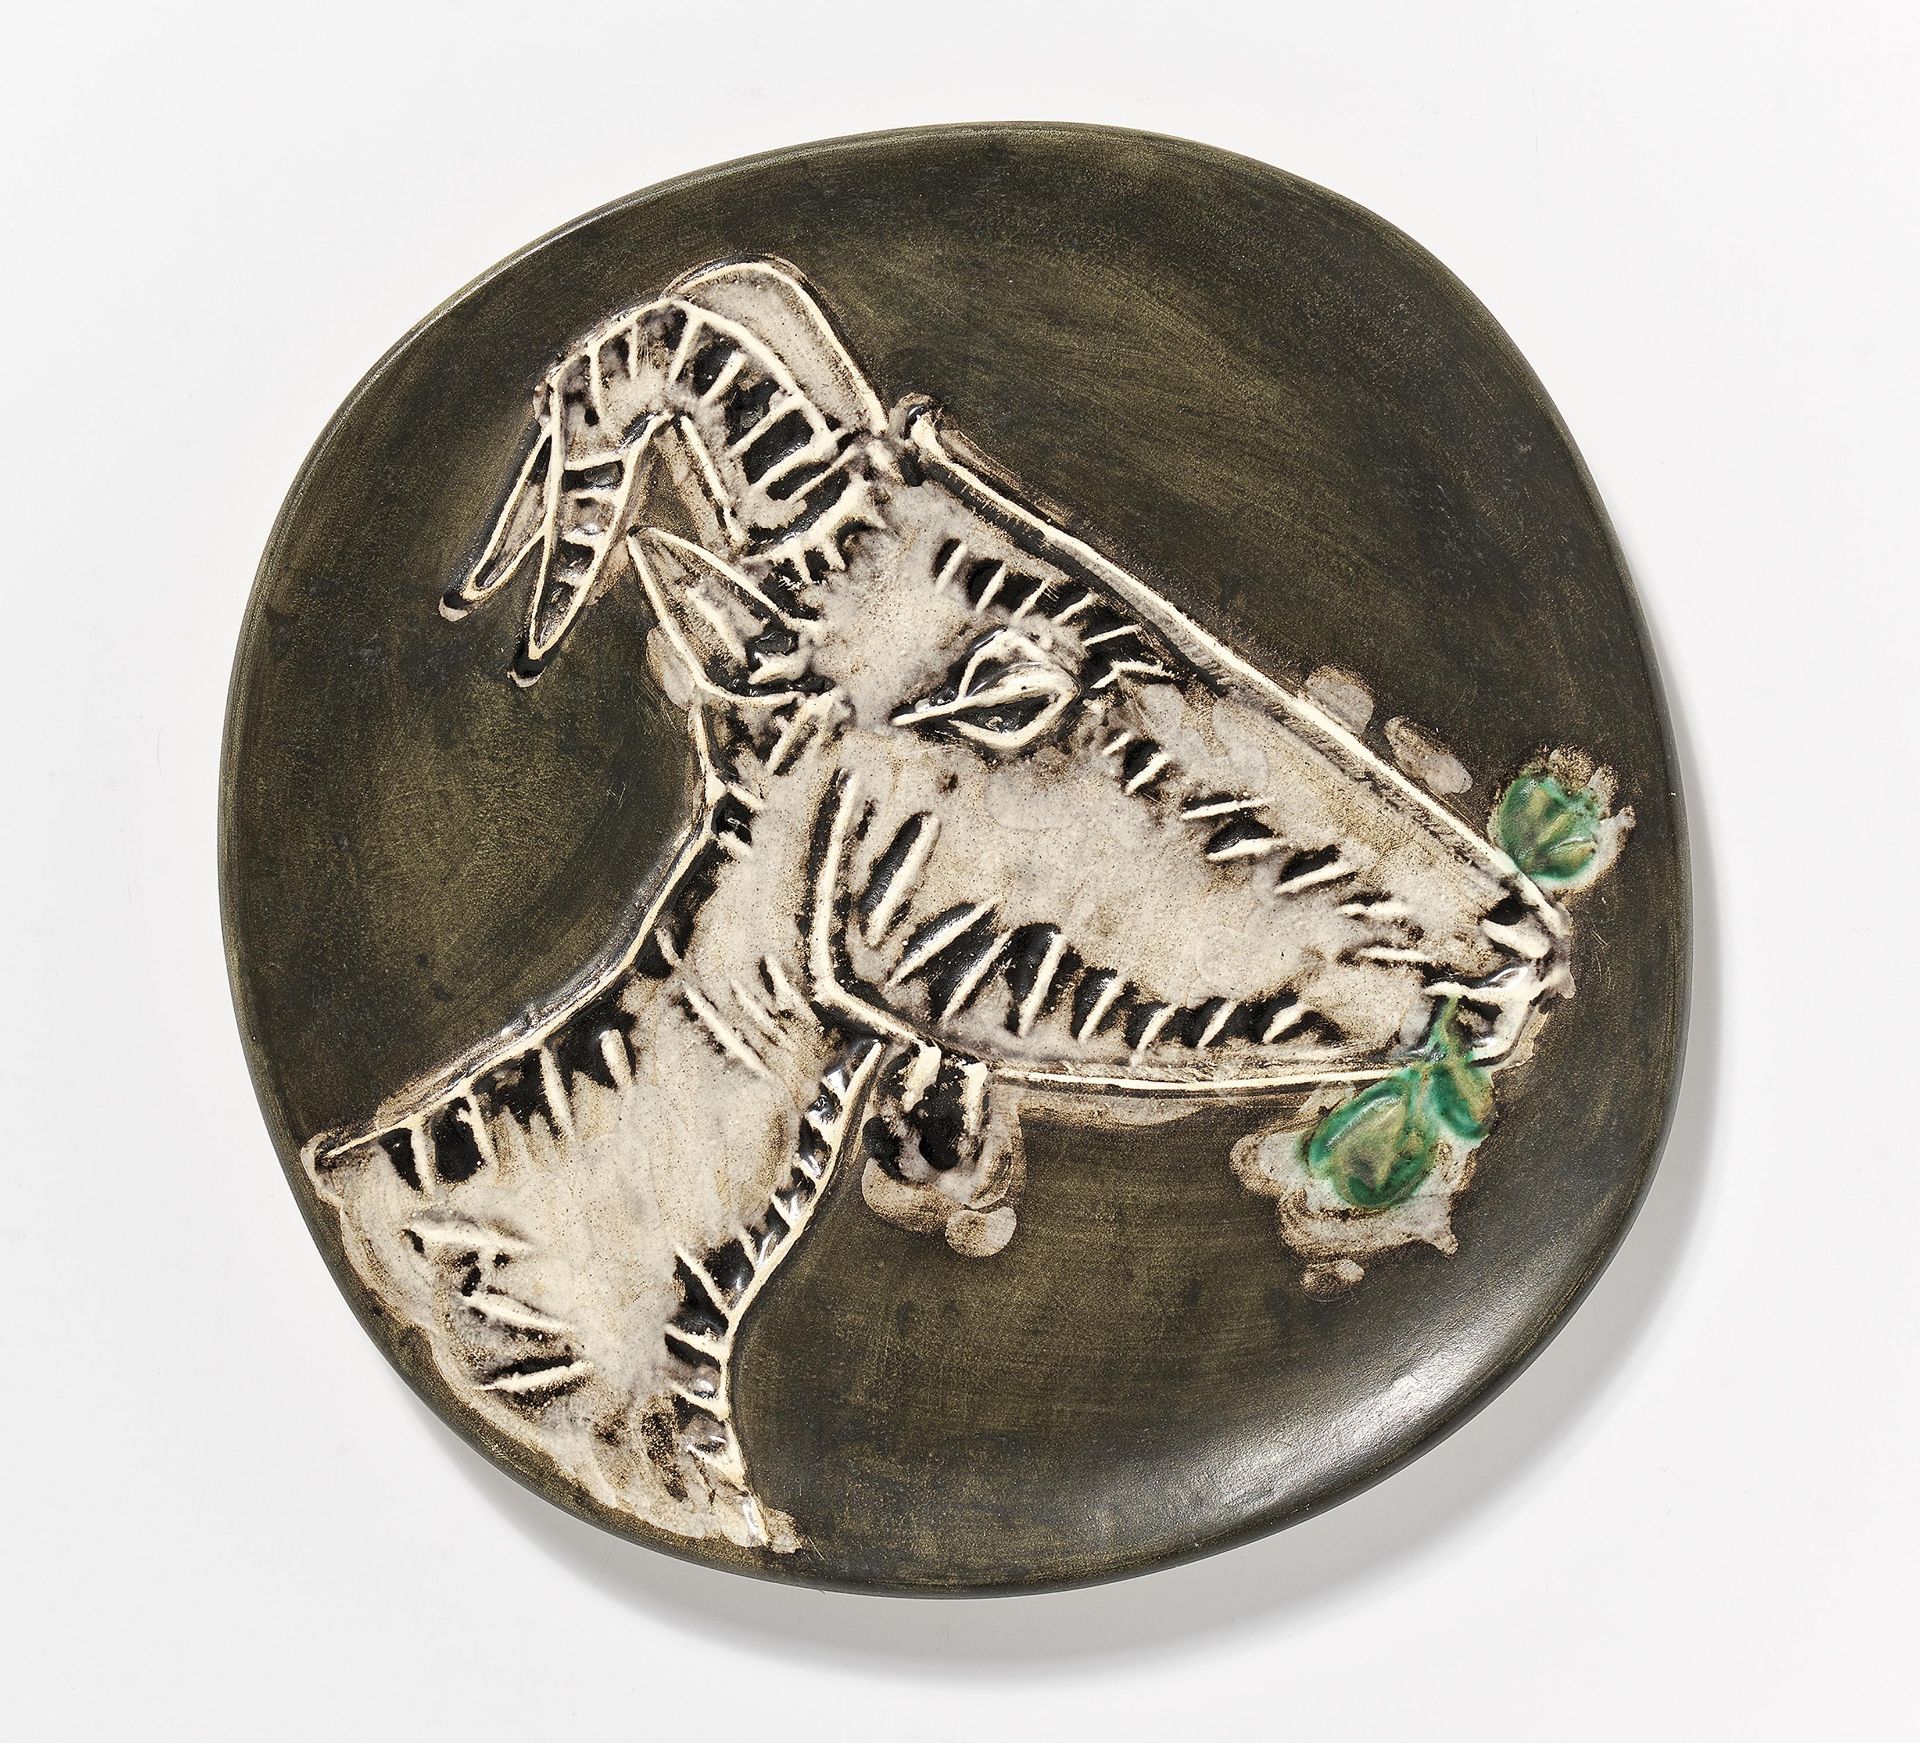 Picasso, Pablo1881 Malaga - 1973 MouginsGoat's head in profile. 1950. Weißes Steingut, schwarz und